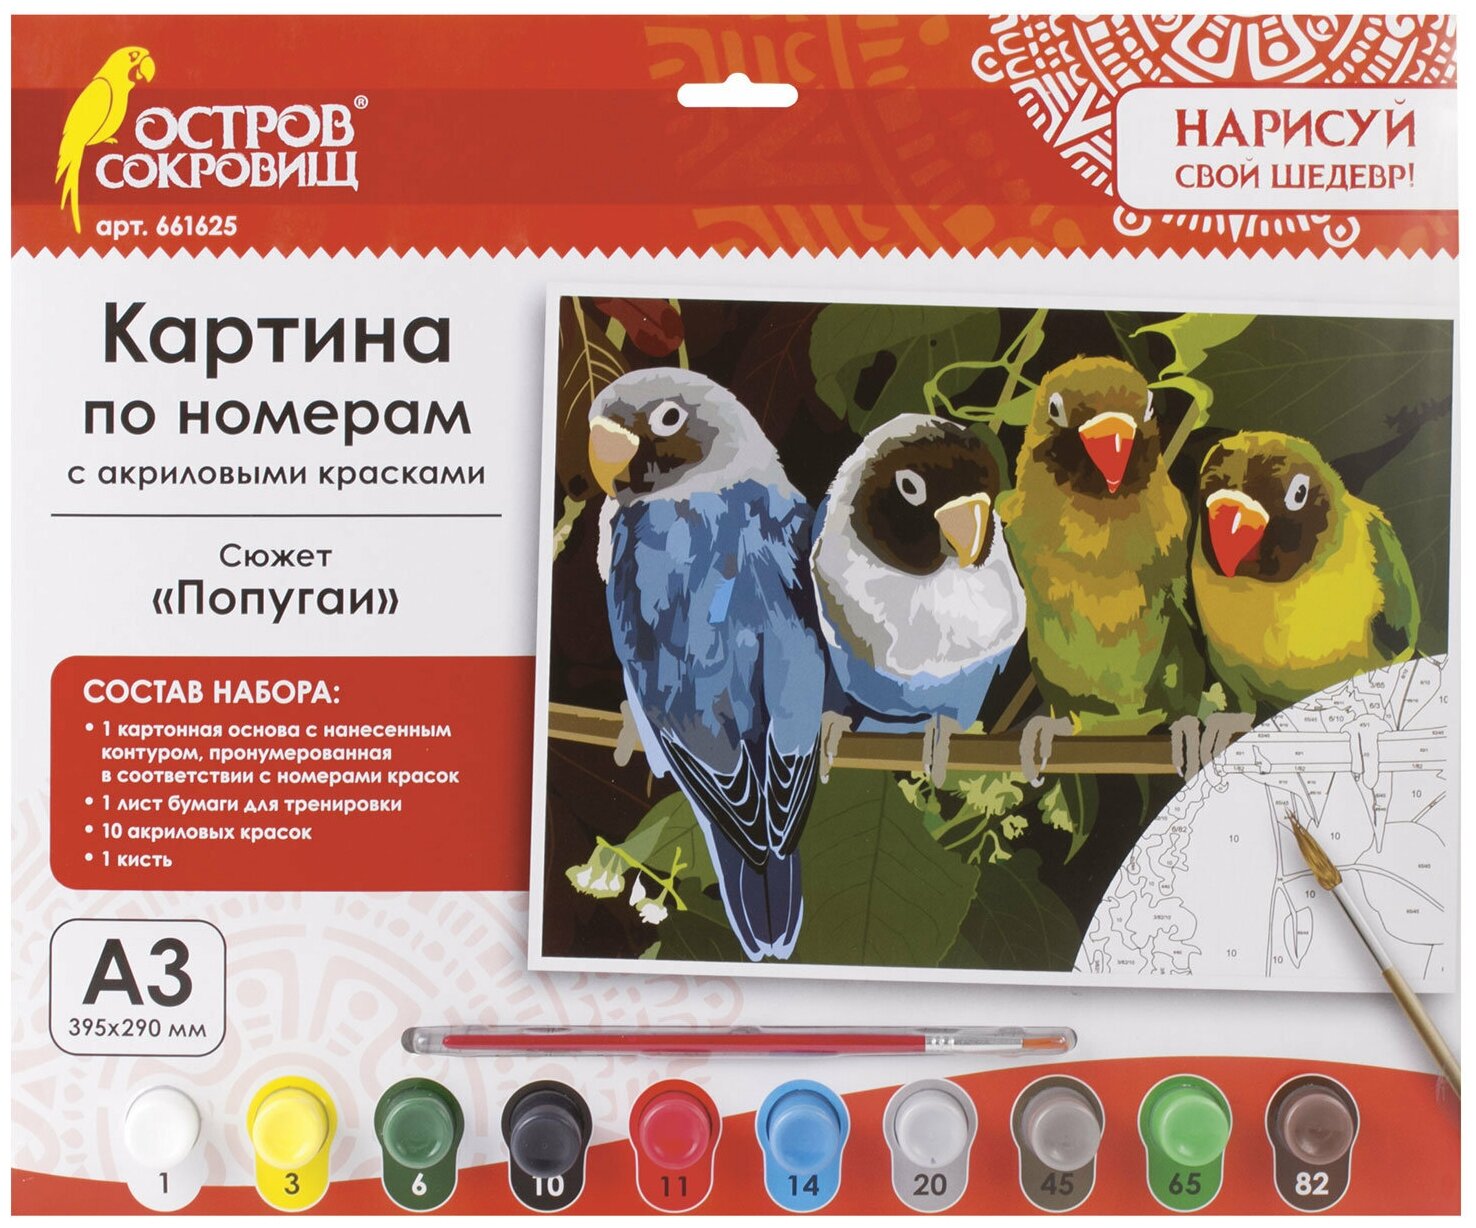 Картина по номерам А3, остров сокровищ «попугаи», С акриловыми красками, картон, кисть, 661625